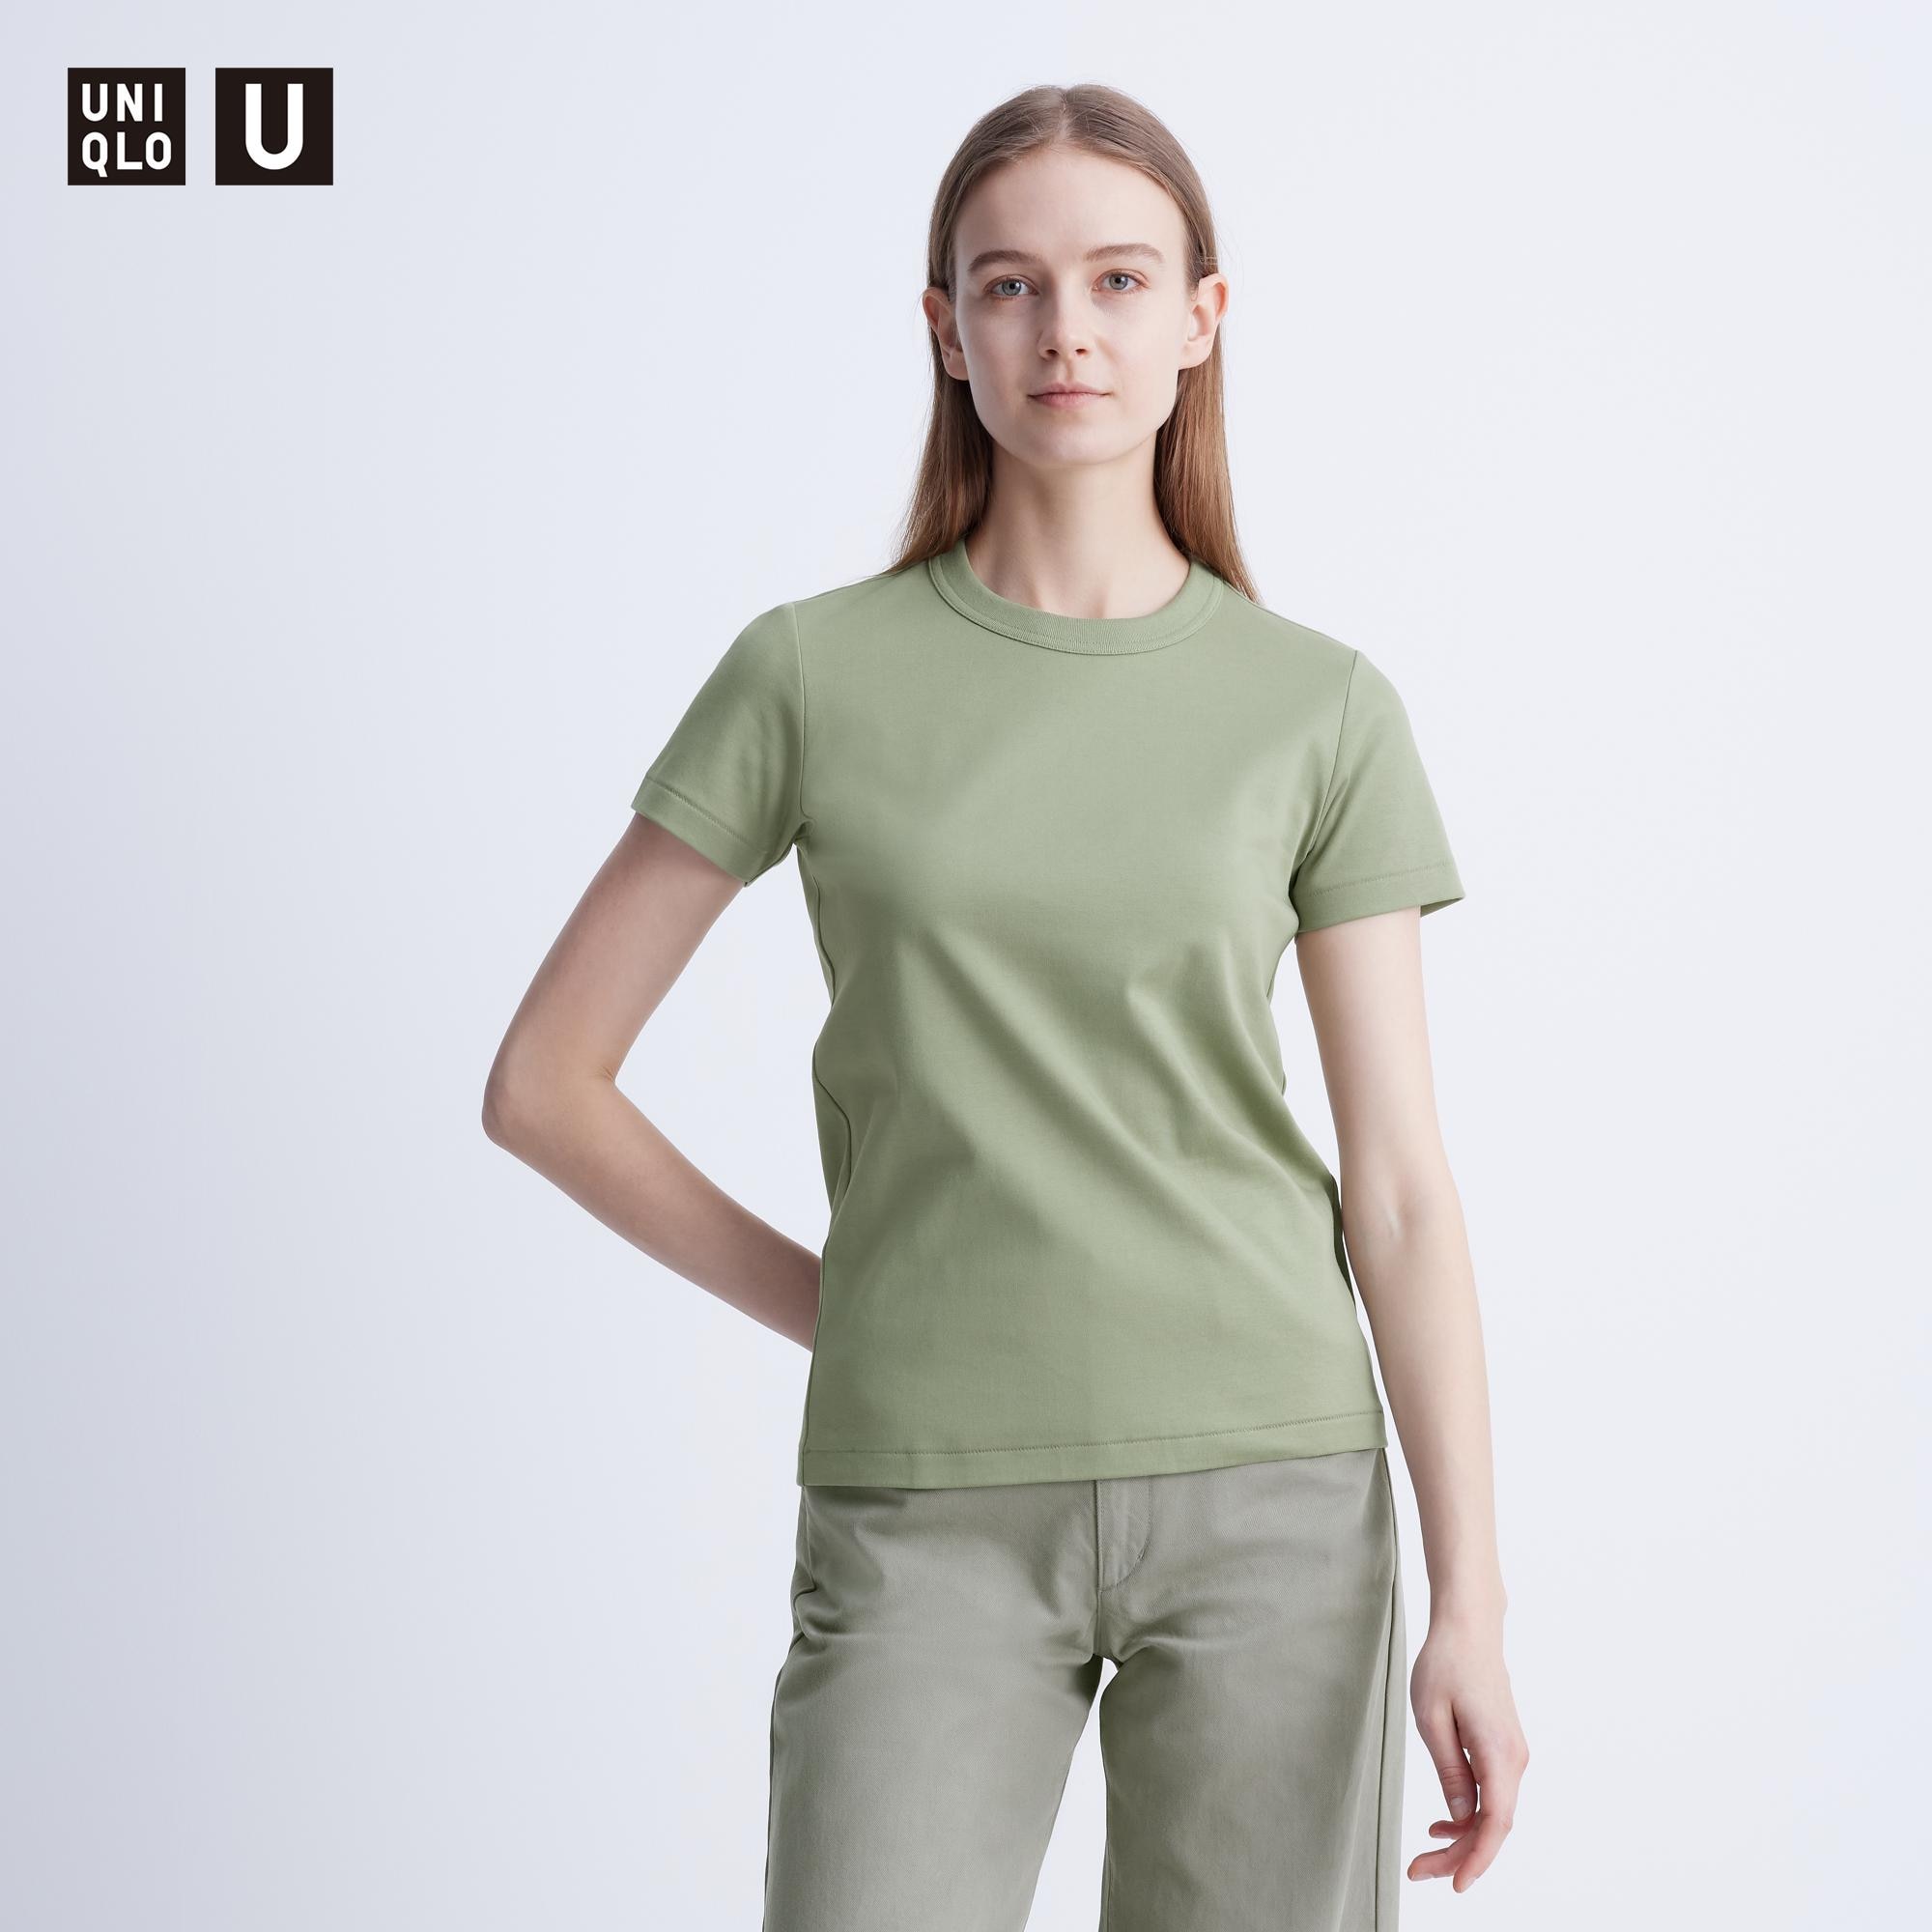 カラーTシャツの関連商品 | ユニクロ